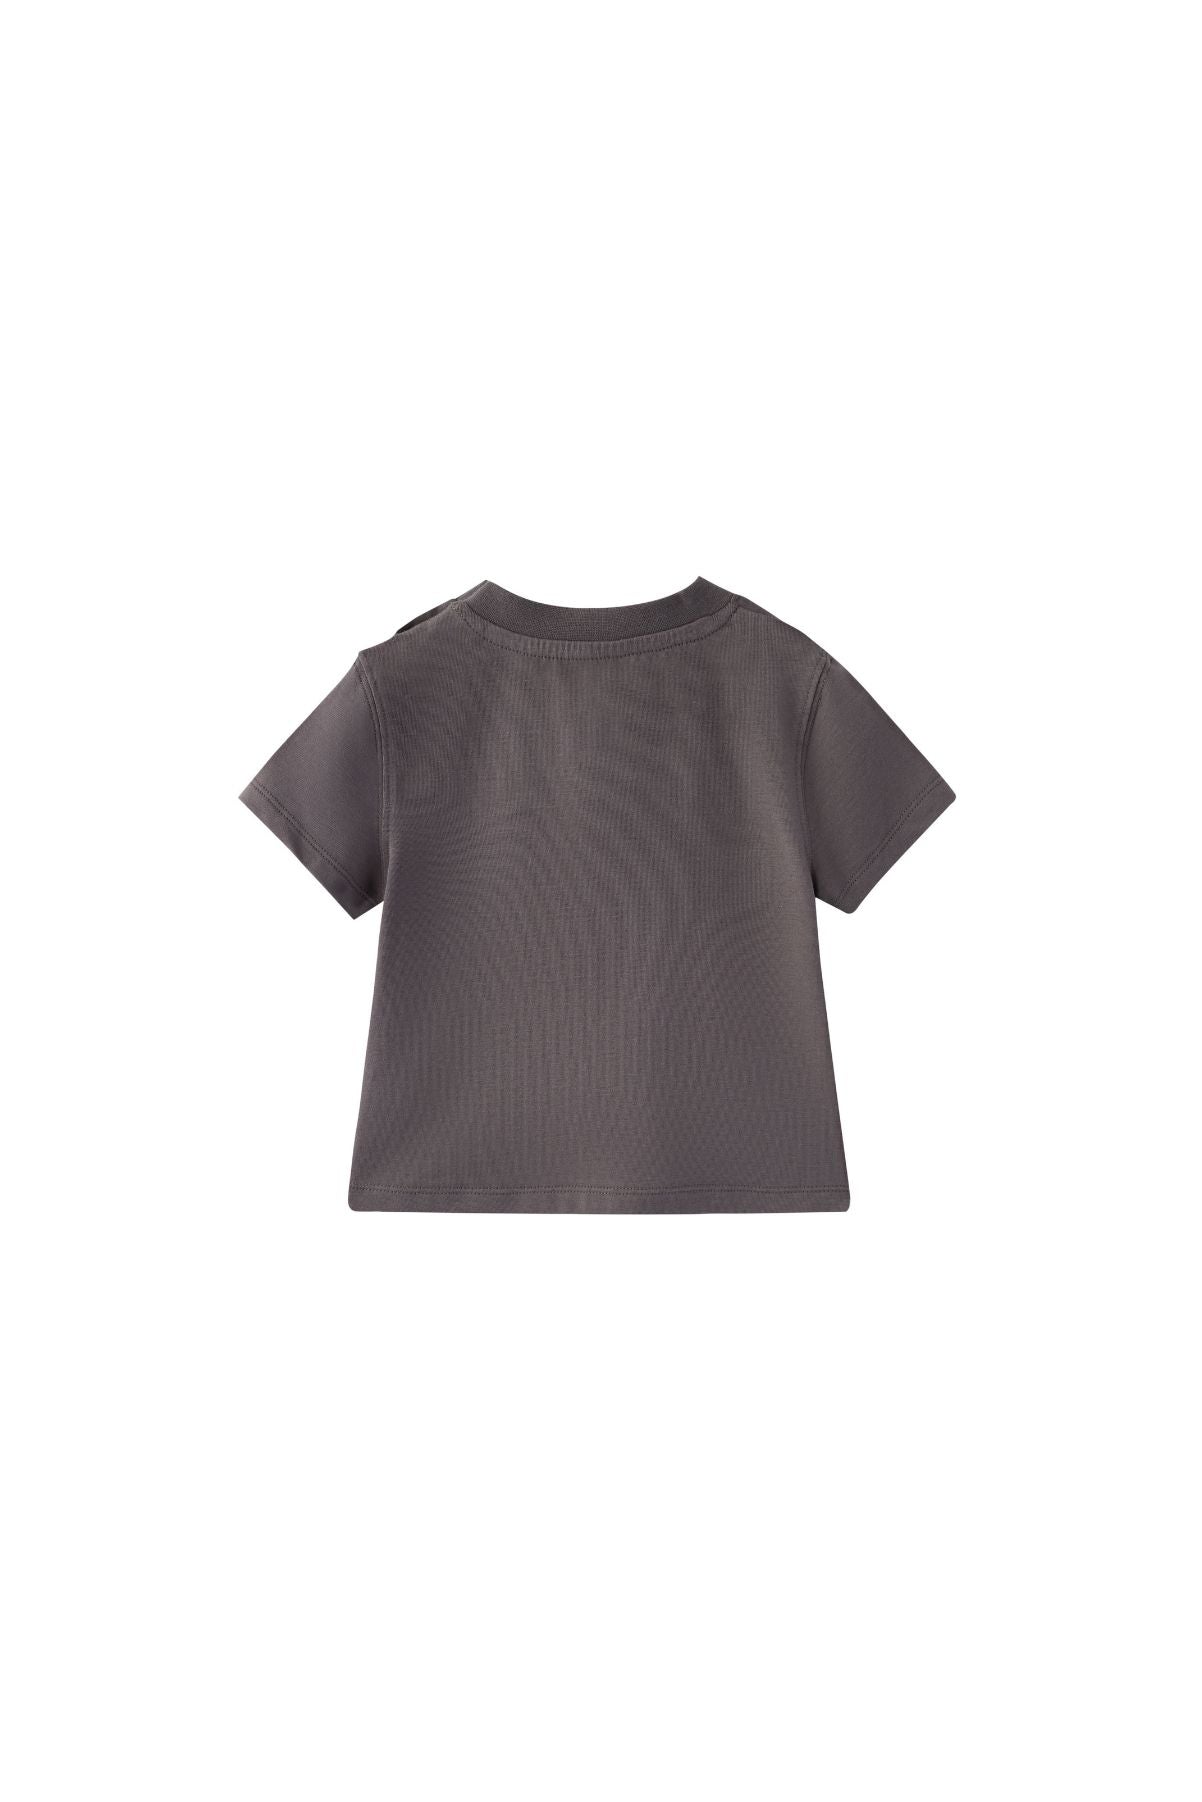 Back of Toddler Organic Cotton Pocket T-shirt-Dark grey